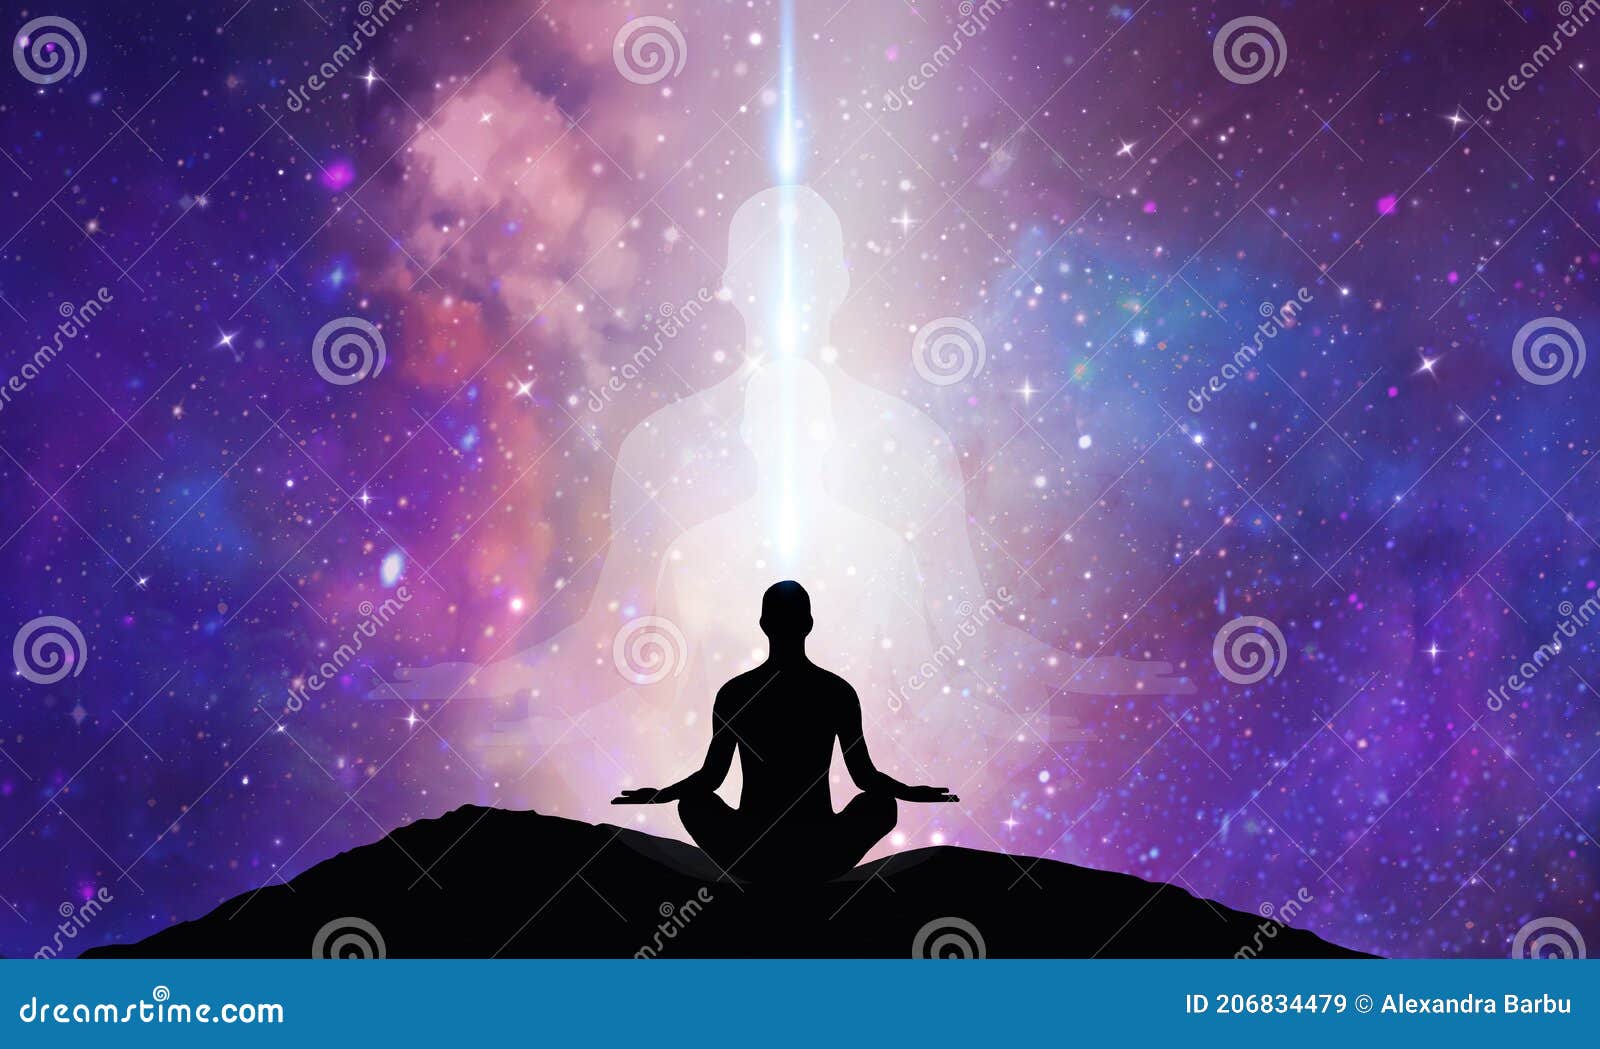 spiritual energy healing power, conscience awakening, meditation, expansion